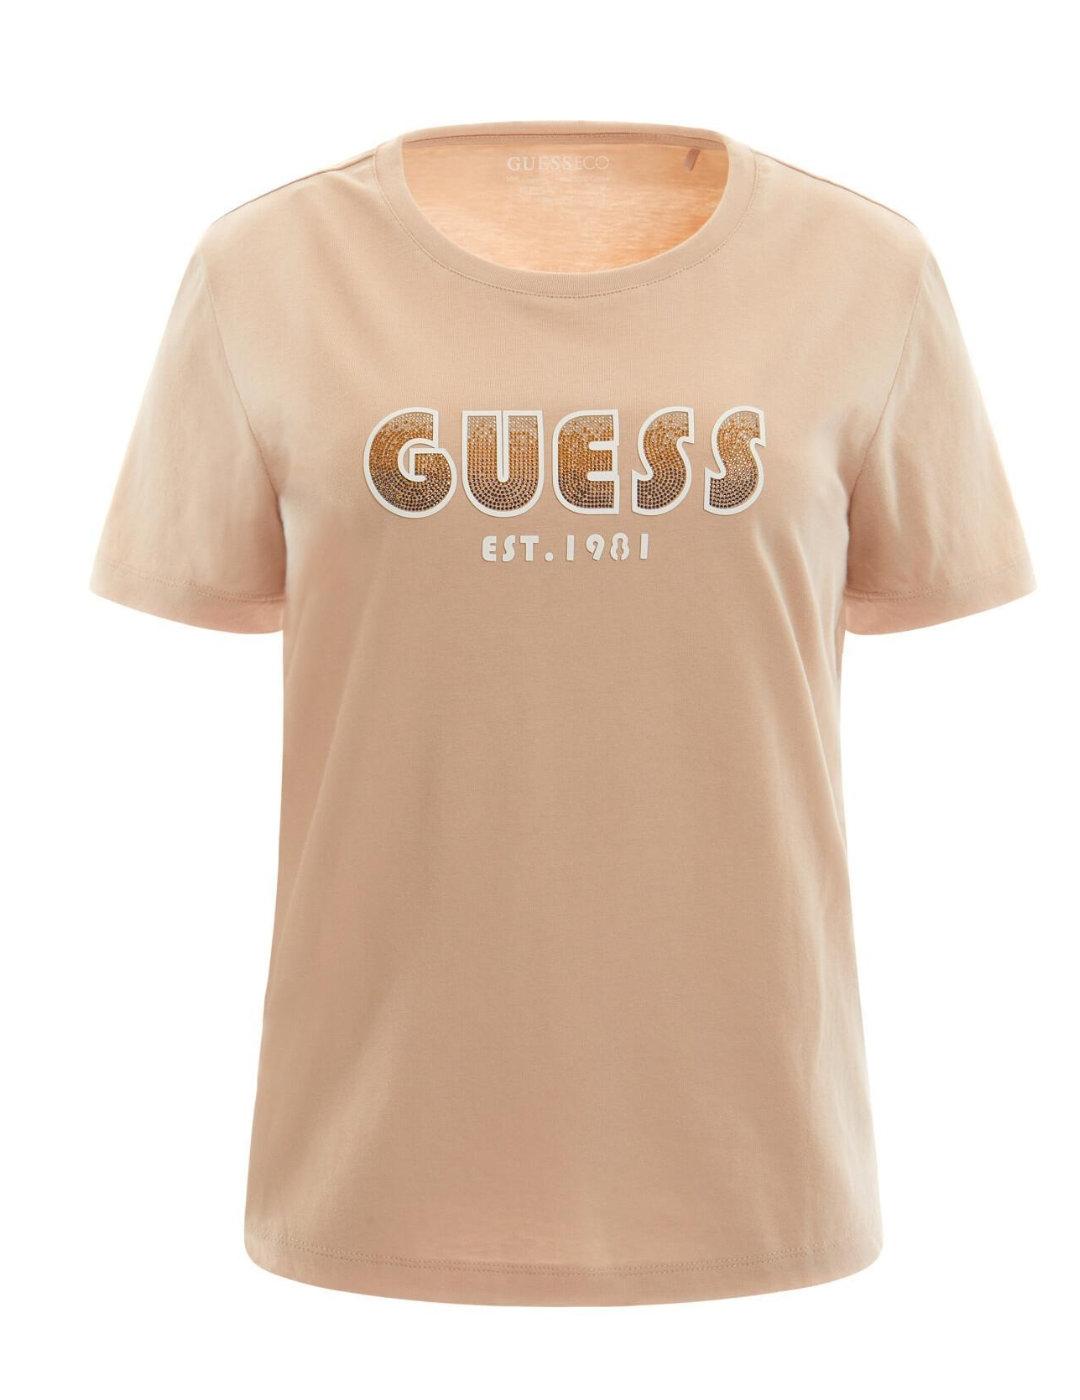 Camiseta Guess Shaded beige manga corta mujer